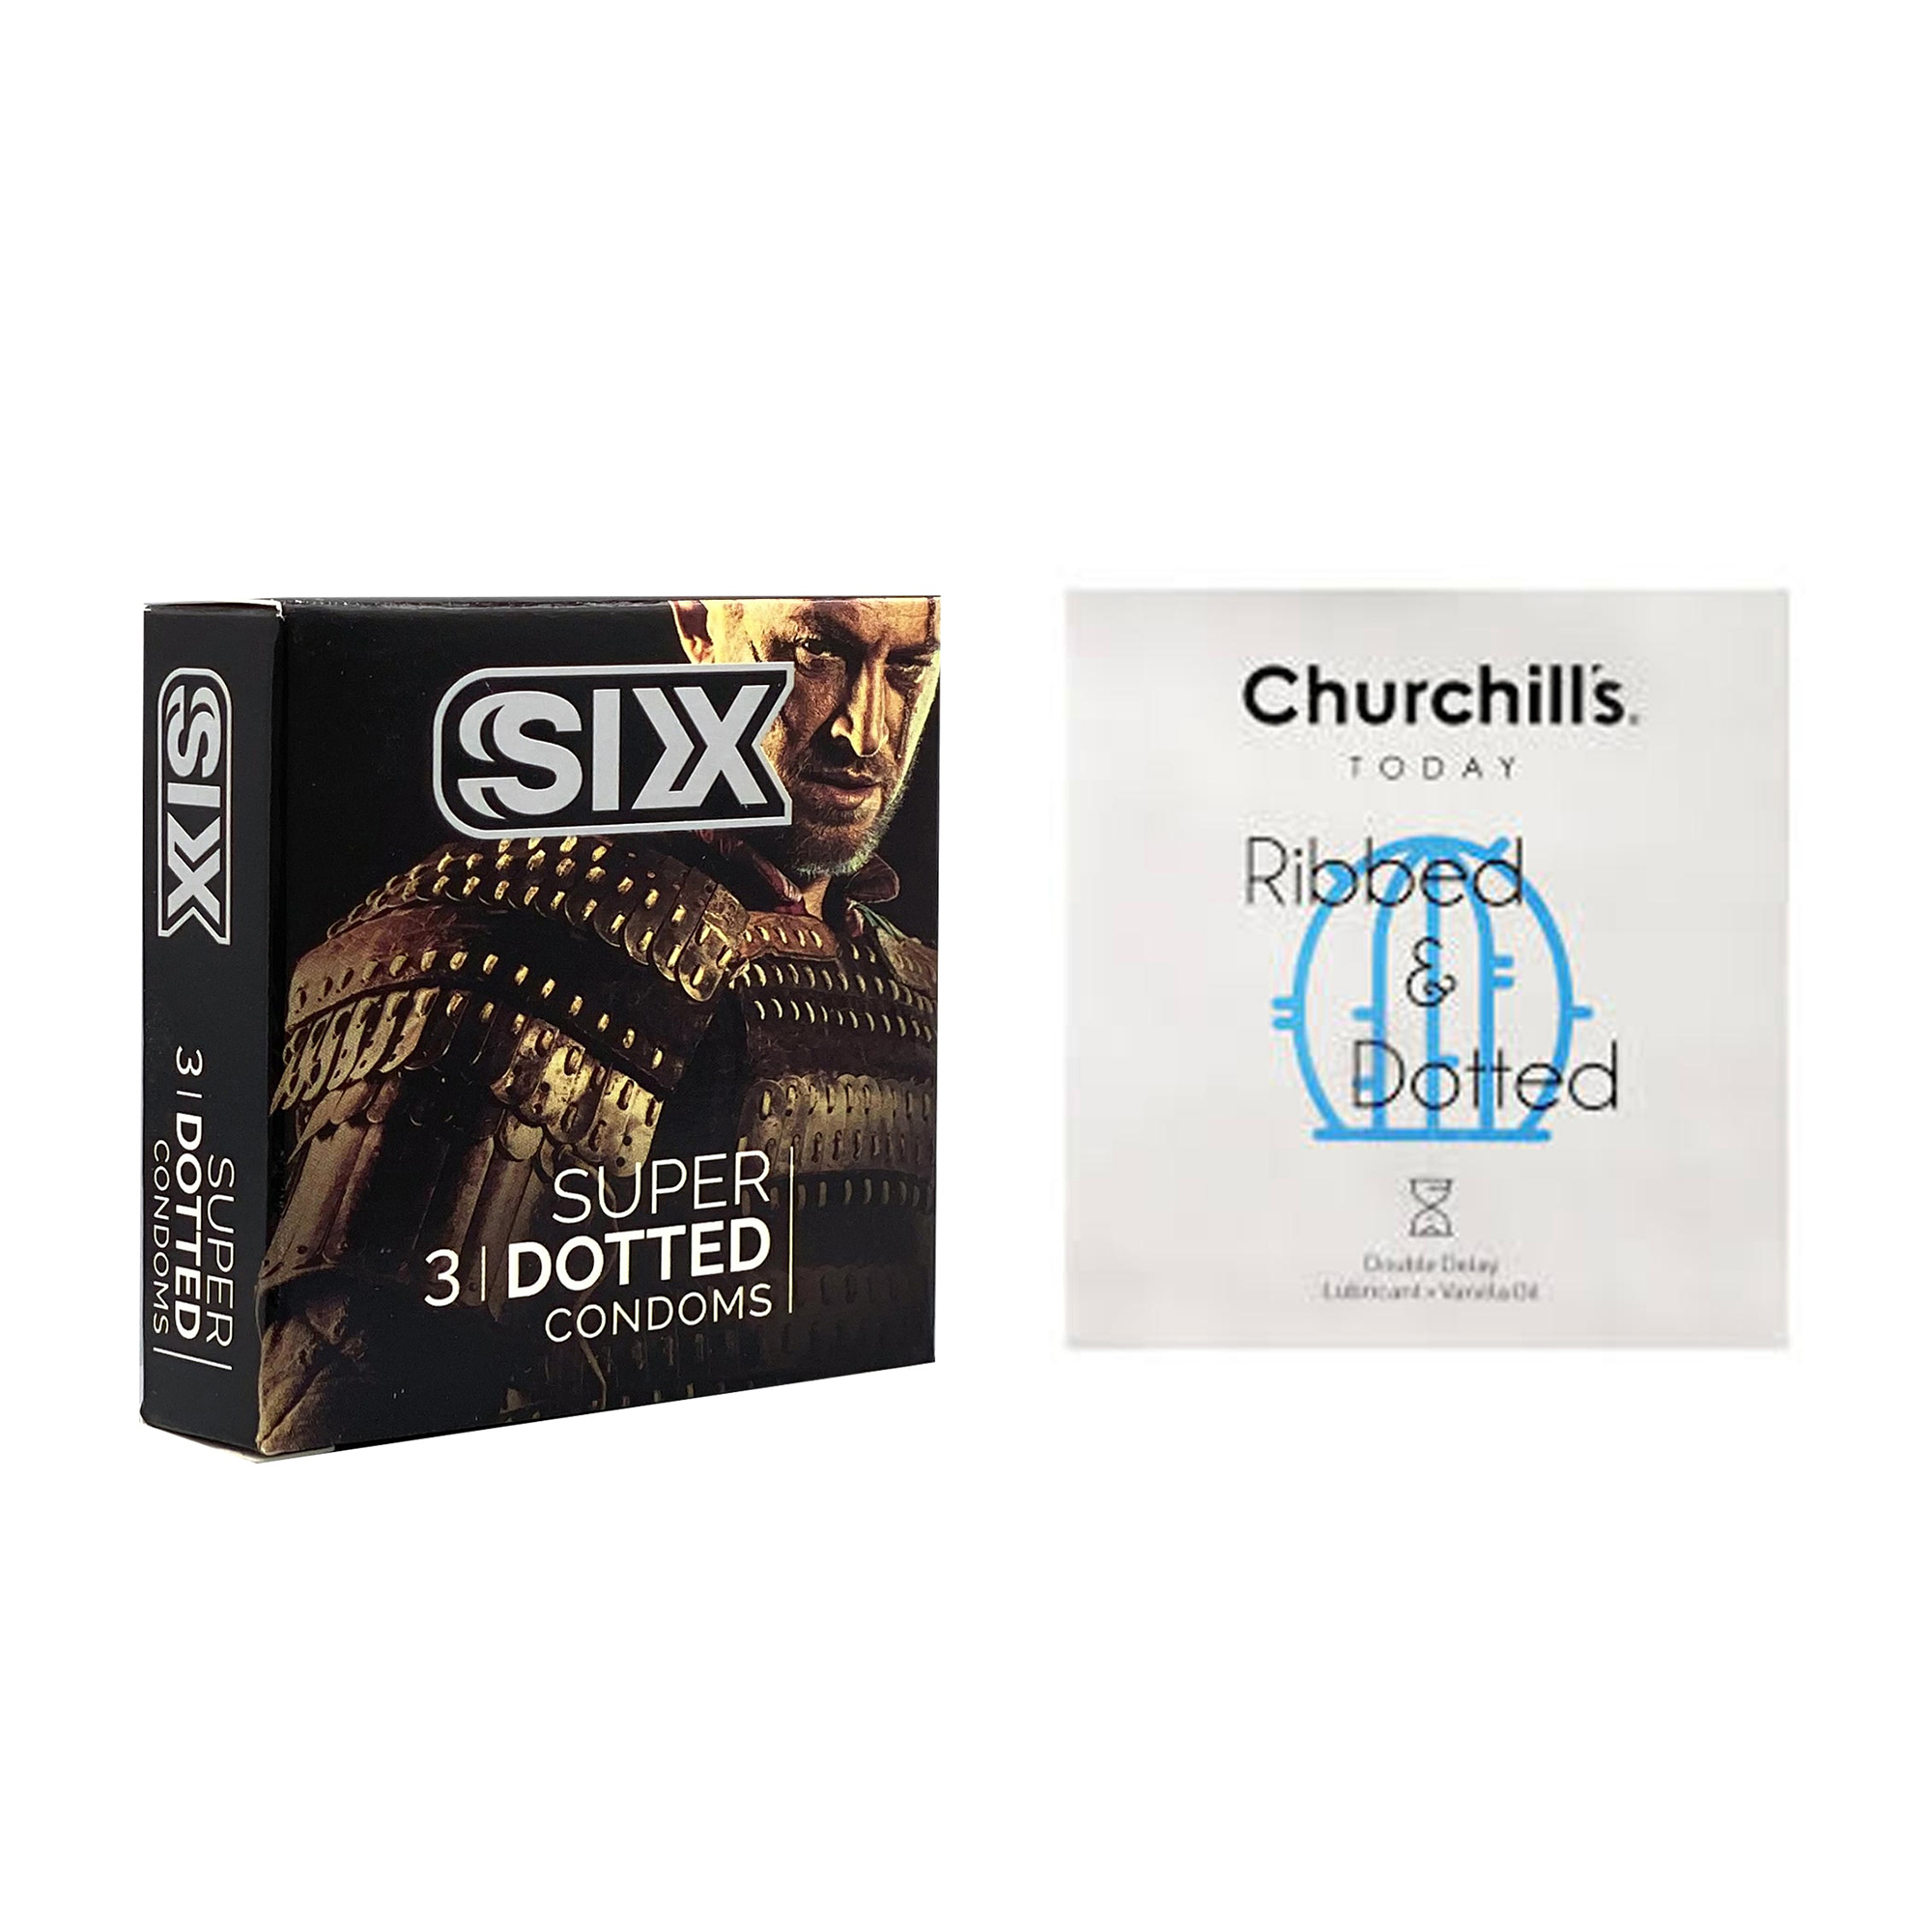 کاندوم چرچیلز مدل Ribbed & Dotted بسته 3 عددی به همراه کاندوم سیکس مدل خاردار بسته 3 عددی -  - 2